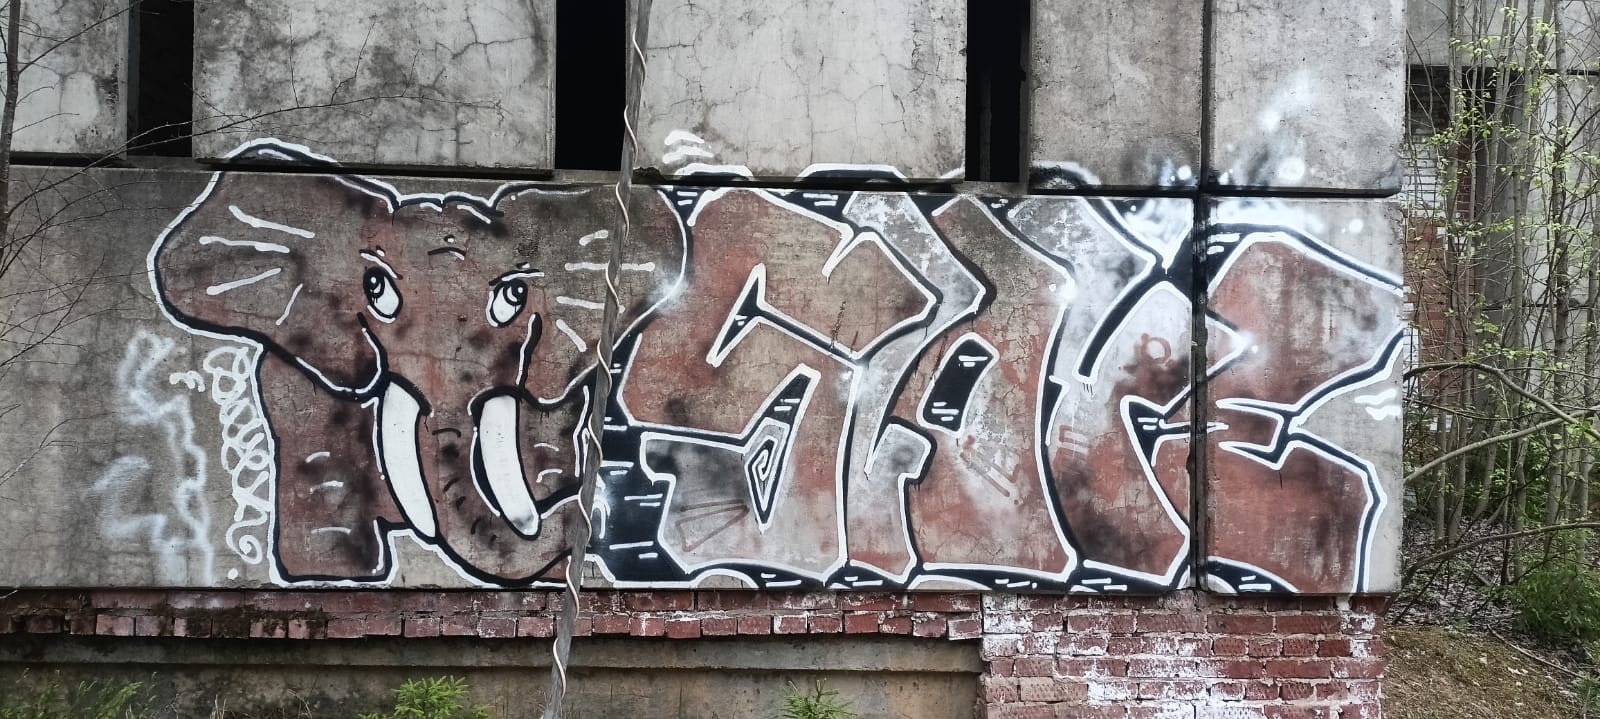 Удаление граффити с фасадов зданий